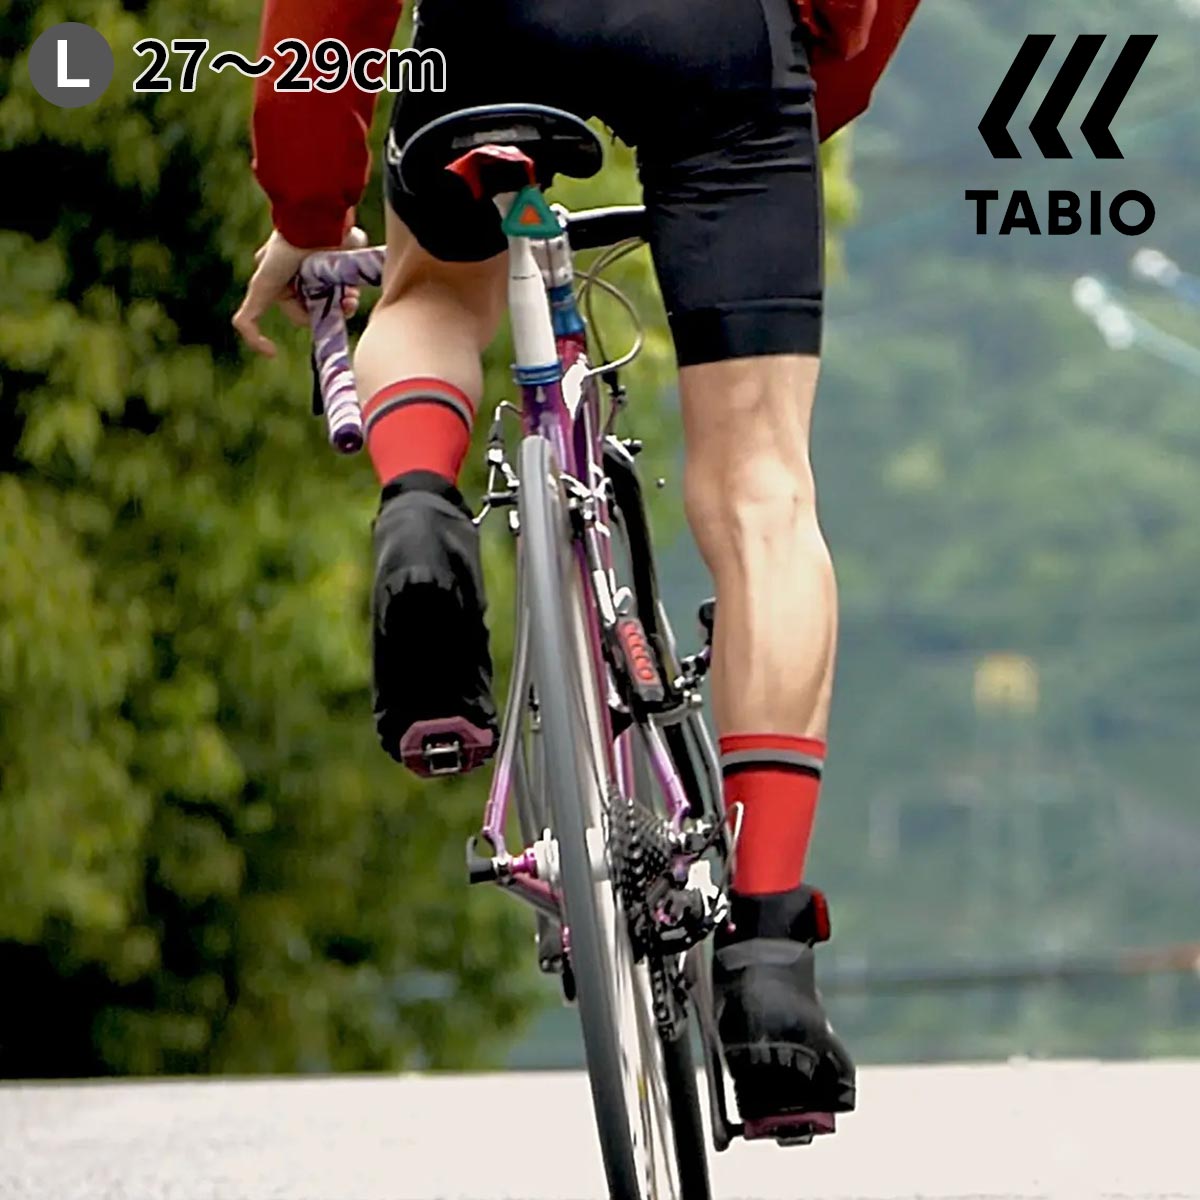 【あす楽】【公式 TABIO SPORTS】 メンズ TABIO CYCLE タビオ サイクル Lサイズ / 靴下屋 靴下 タビオ タビオスポーツ くつ下 自転車 サイクル サイクリングウェア クロスバイク ソックス 白 …